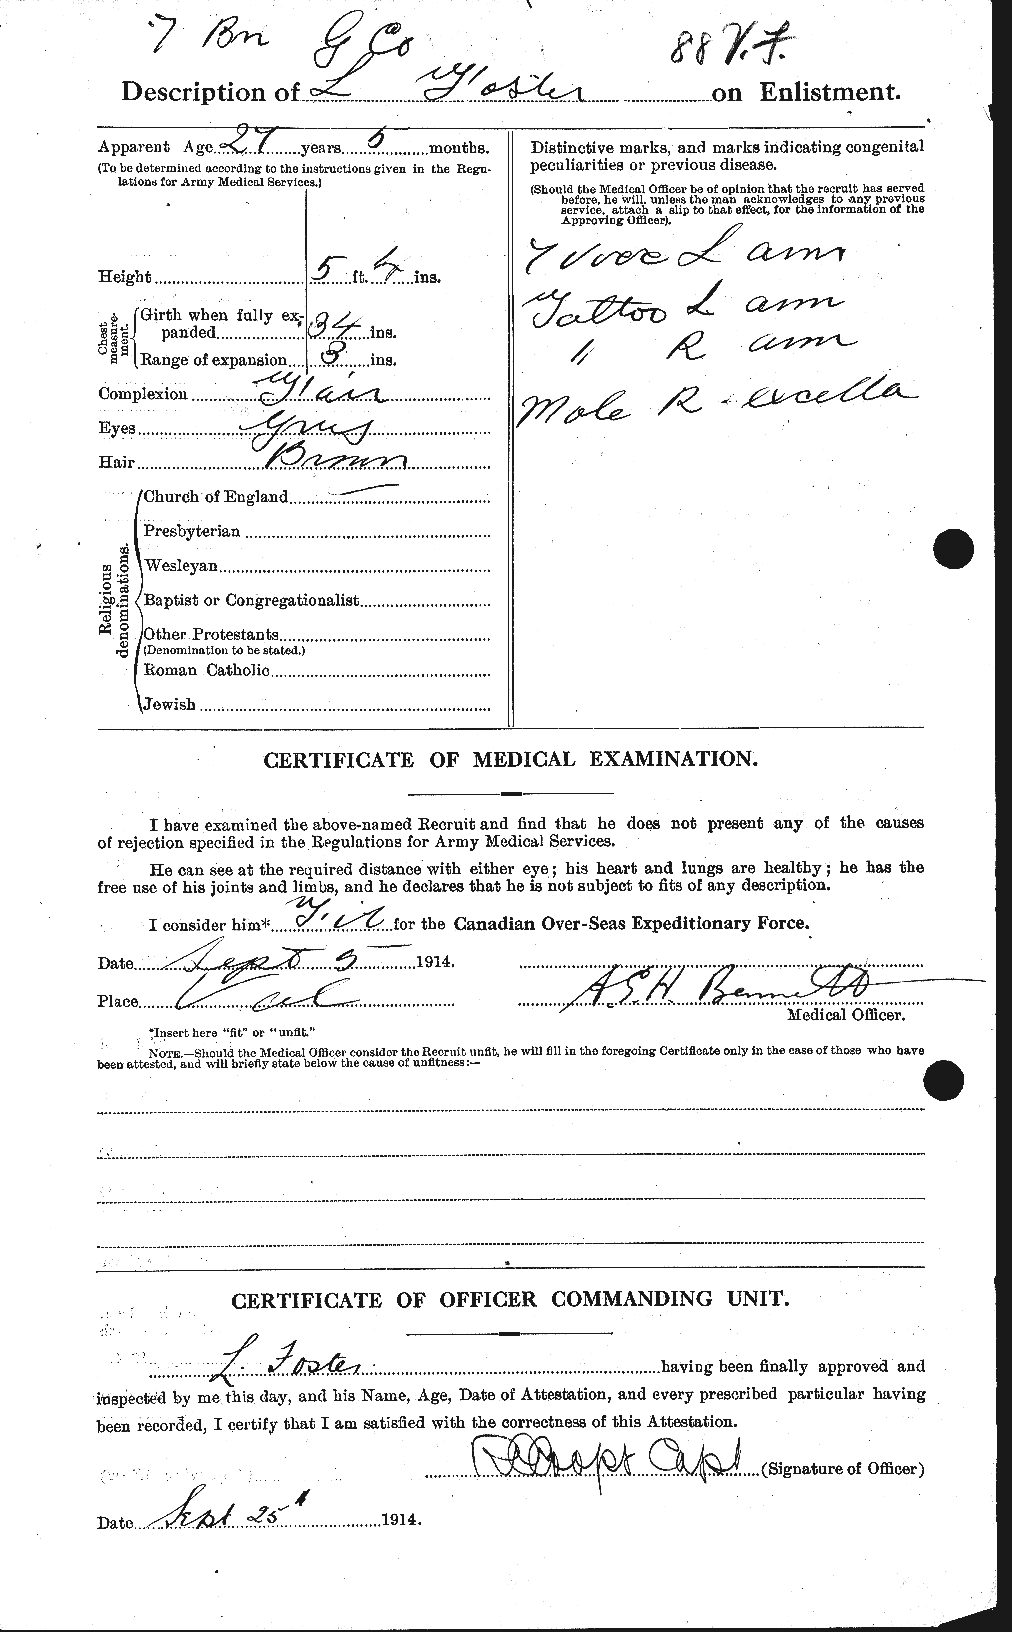 Dossiers du Personnel de la Première Guerre mondiale - CEC 333403b